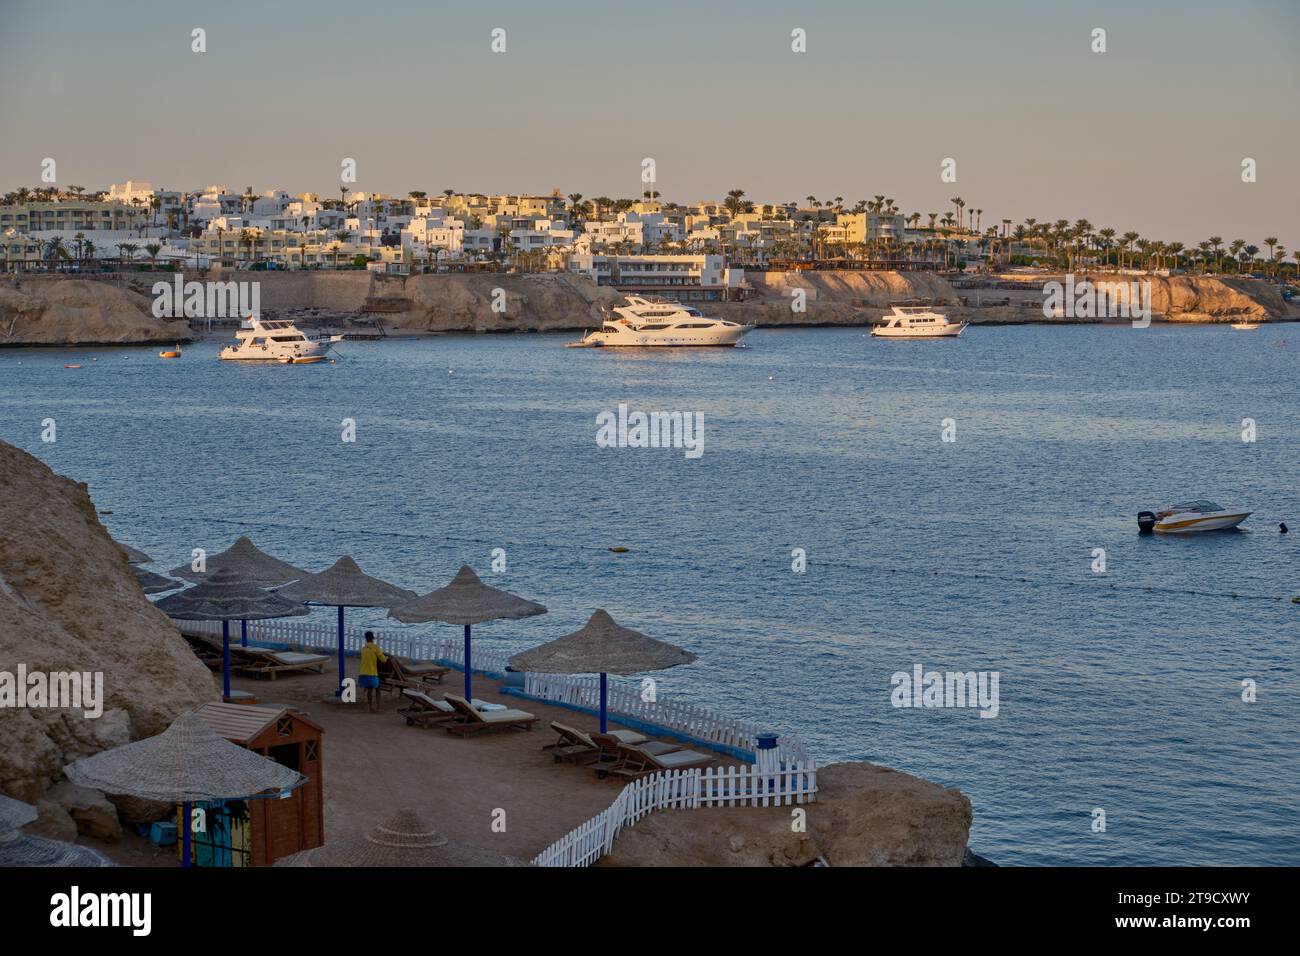 Vue panoramique de Sharks Bay à Sharm El Sheikh, Egypte après-midi prise de vue montrant la mer rouge avec des touristes, des yachts et des hôtels en arrière-plan Banque D'Images